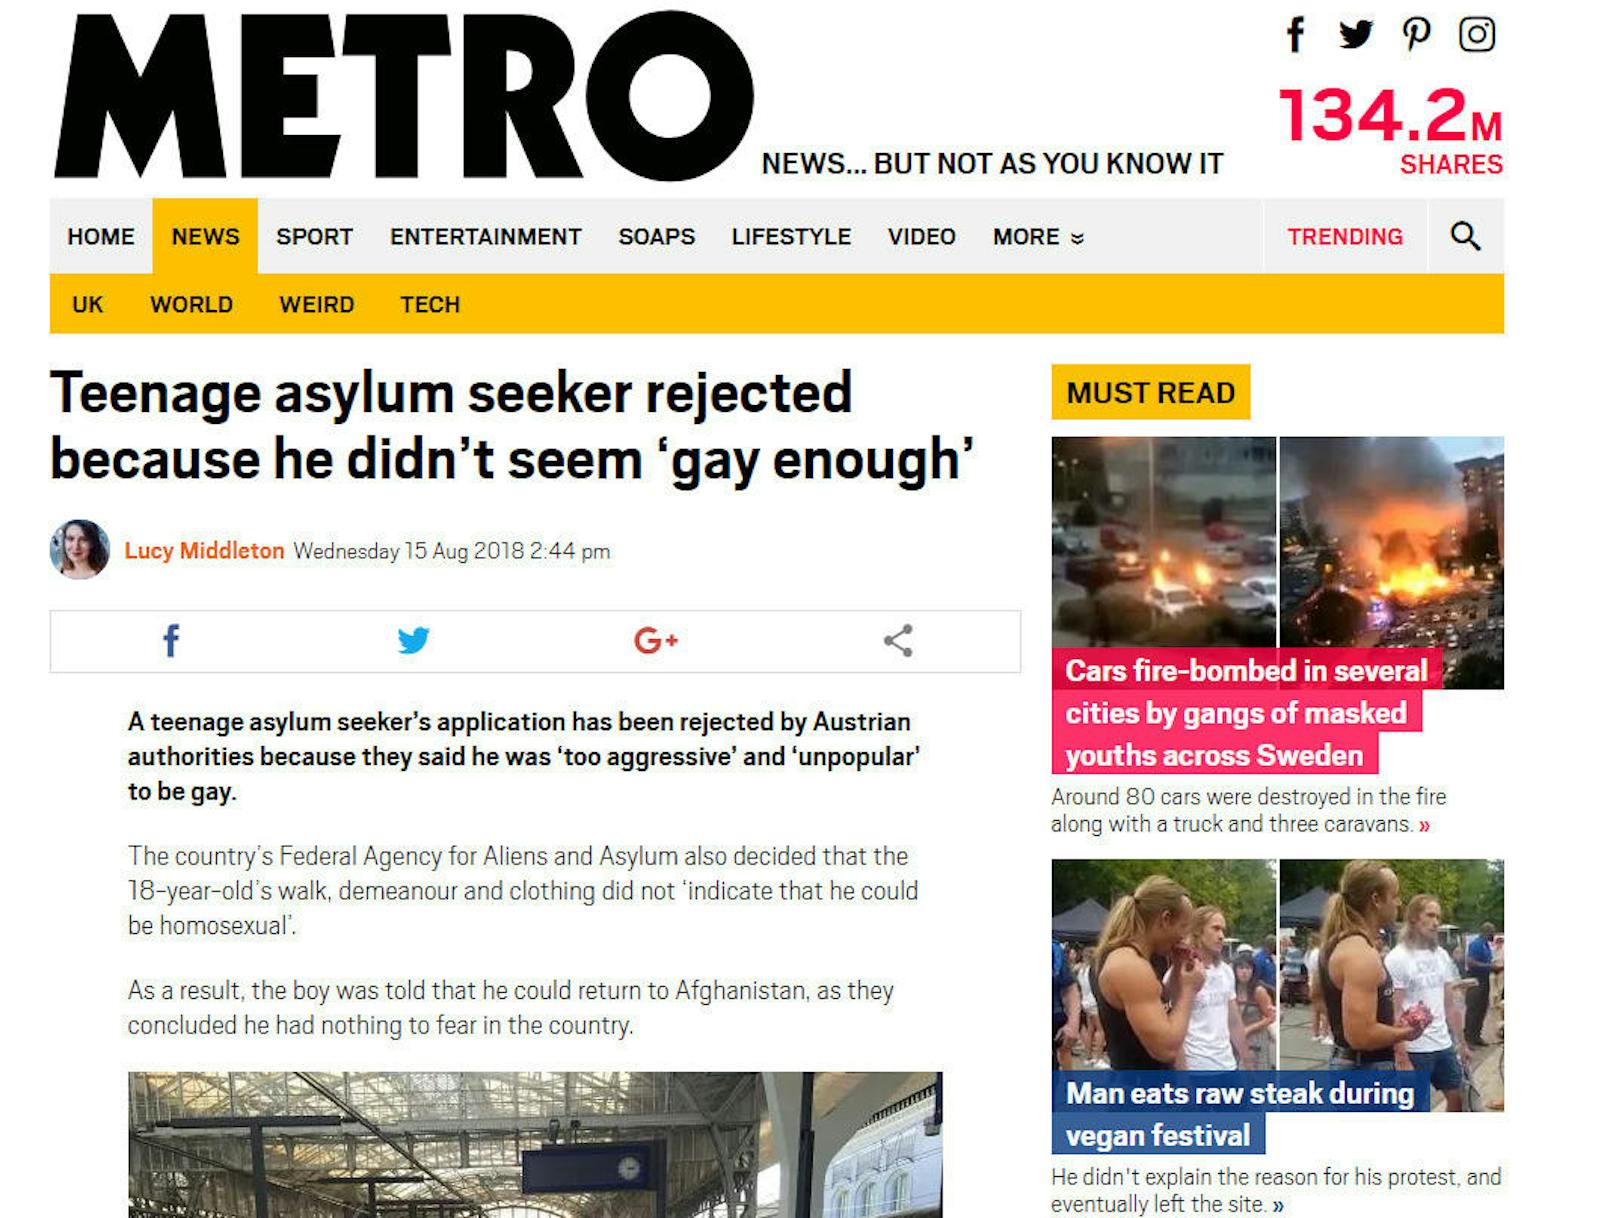 Bei der britischen "Metro" heißt es: "Nicht schwul genug"